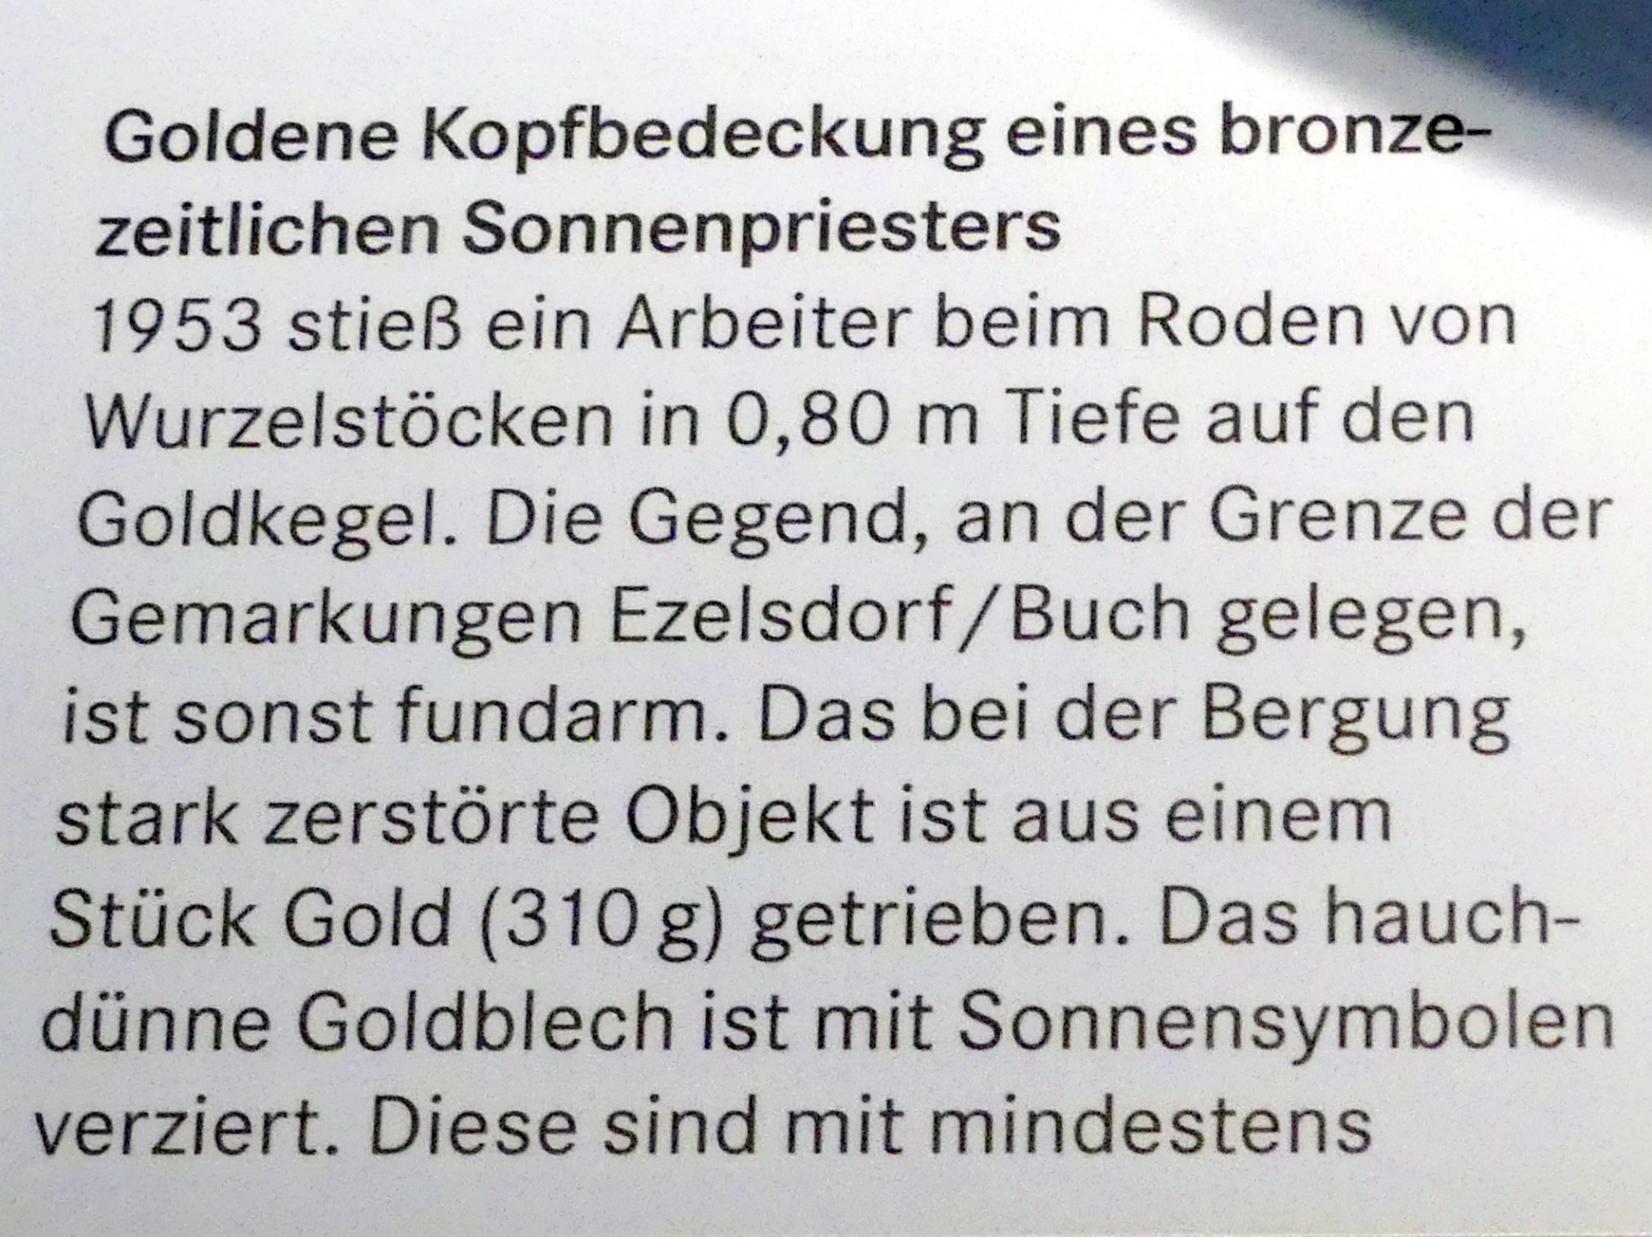 Gold-Kegel von Ezelsdorf-Buch, Späte (Jüngere) Bronzezeit, 1500 - 700 v. Chr., 1100 - 800 v. Chr., Bild 11/12